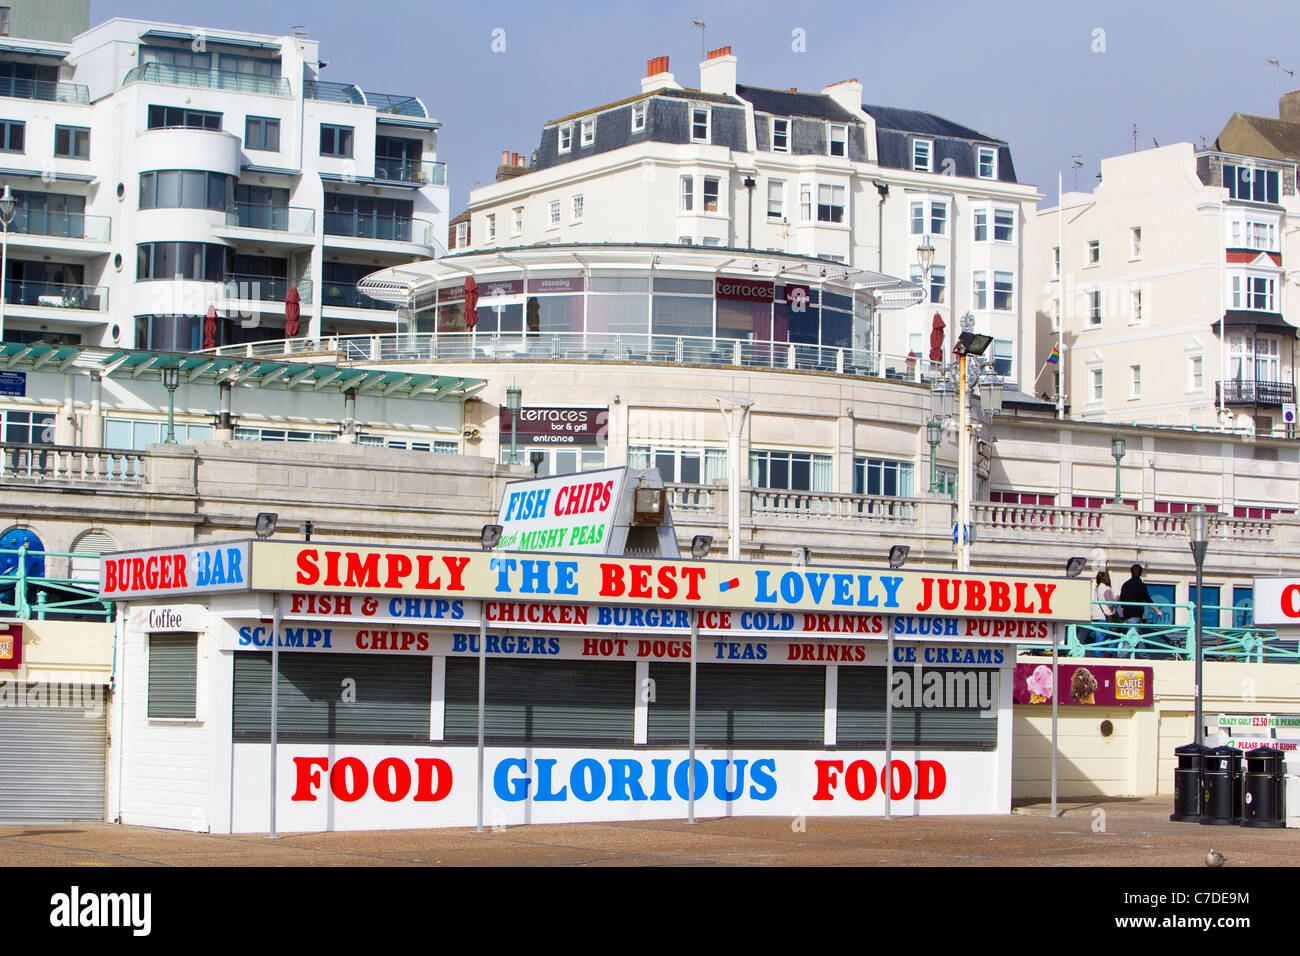 Les bâtiments du front de mer et de l'alimentation kiosque, Brighton, East Sussex, UK, automne Banque D'Images